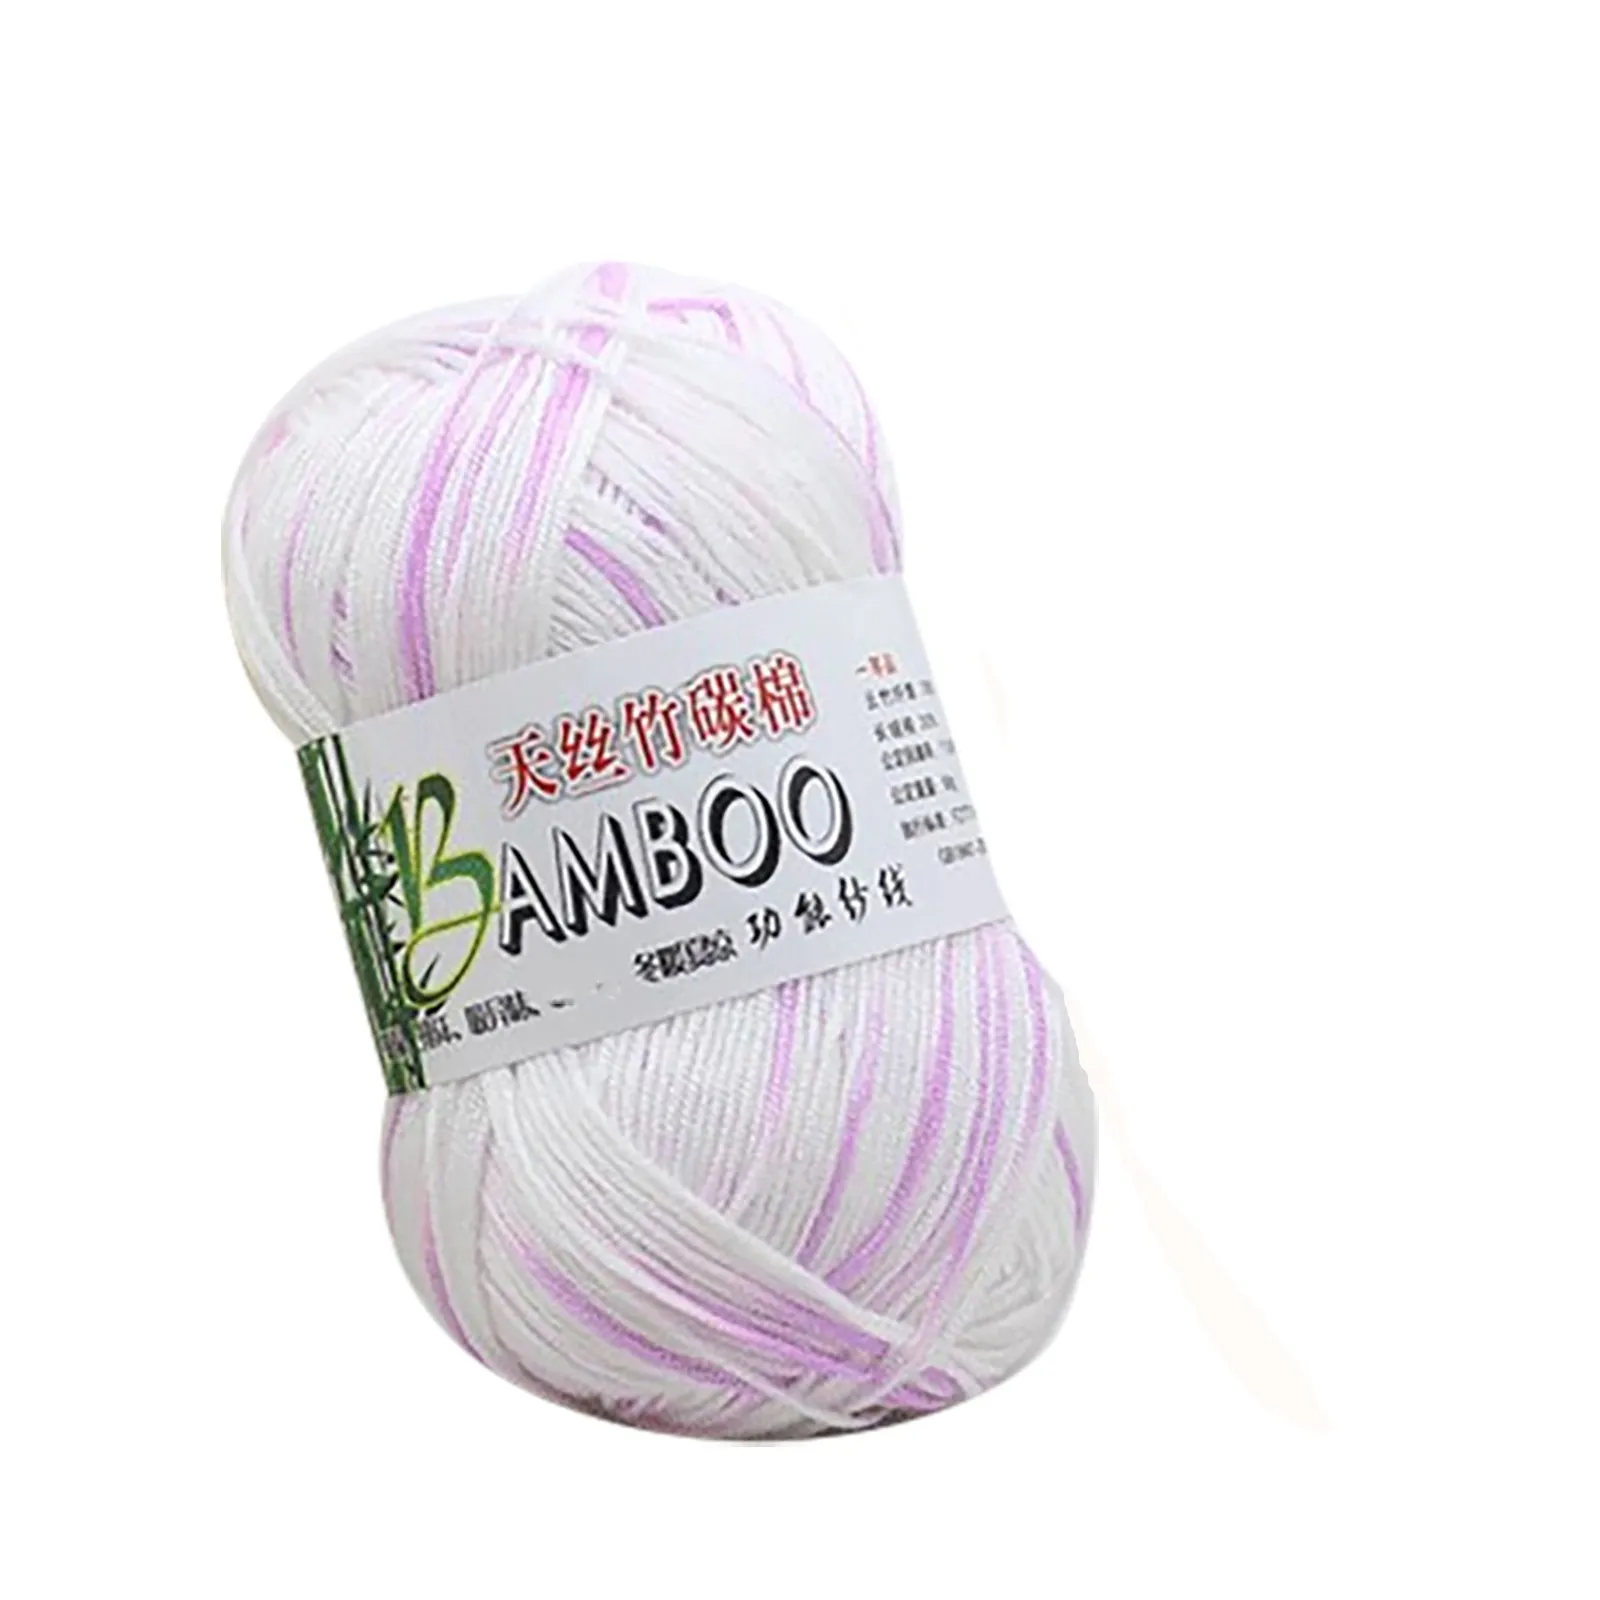 

Cotton Warm Soft Natural Knitting Crochet Knitwear Wool Yarn 50g